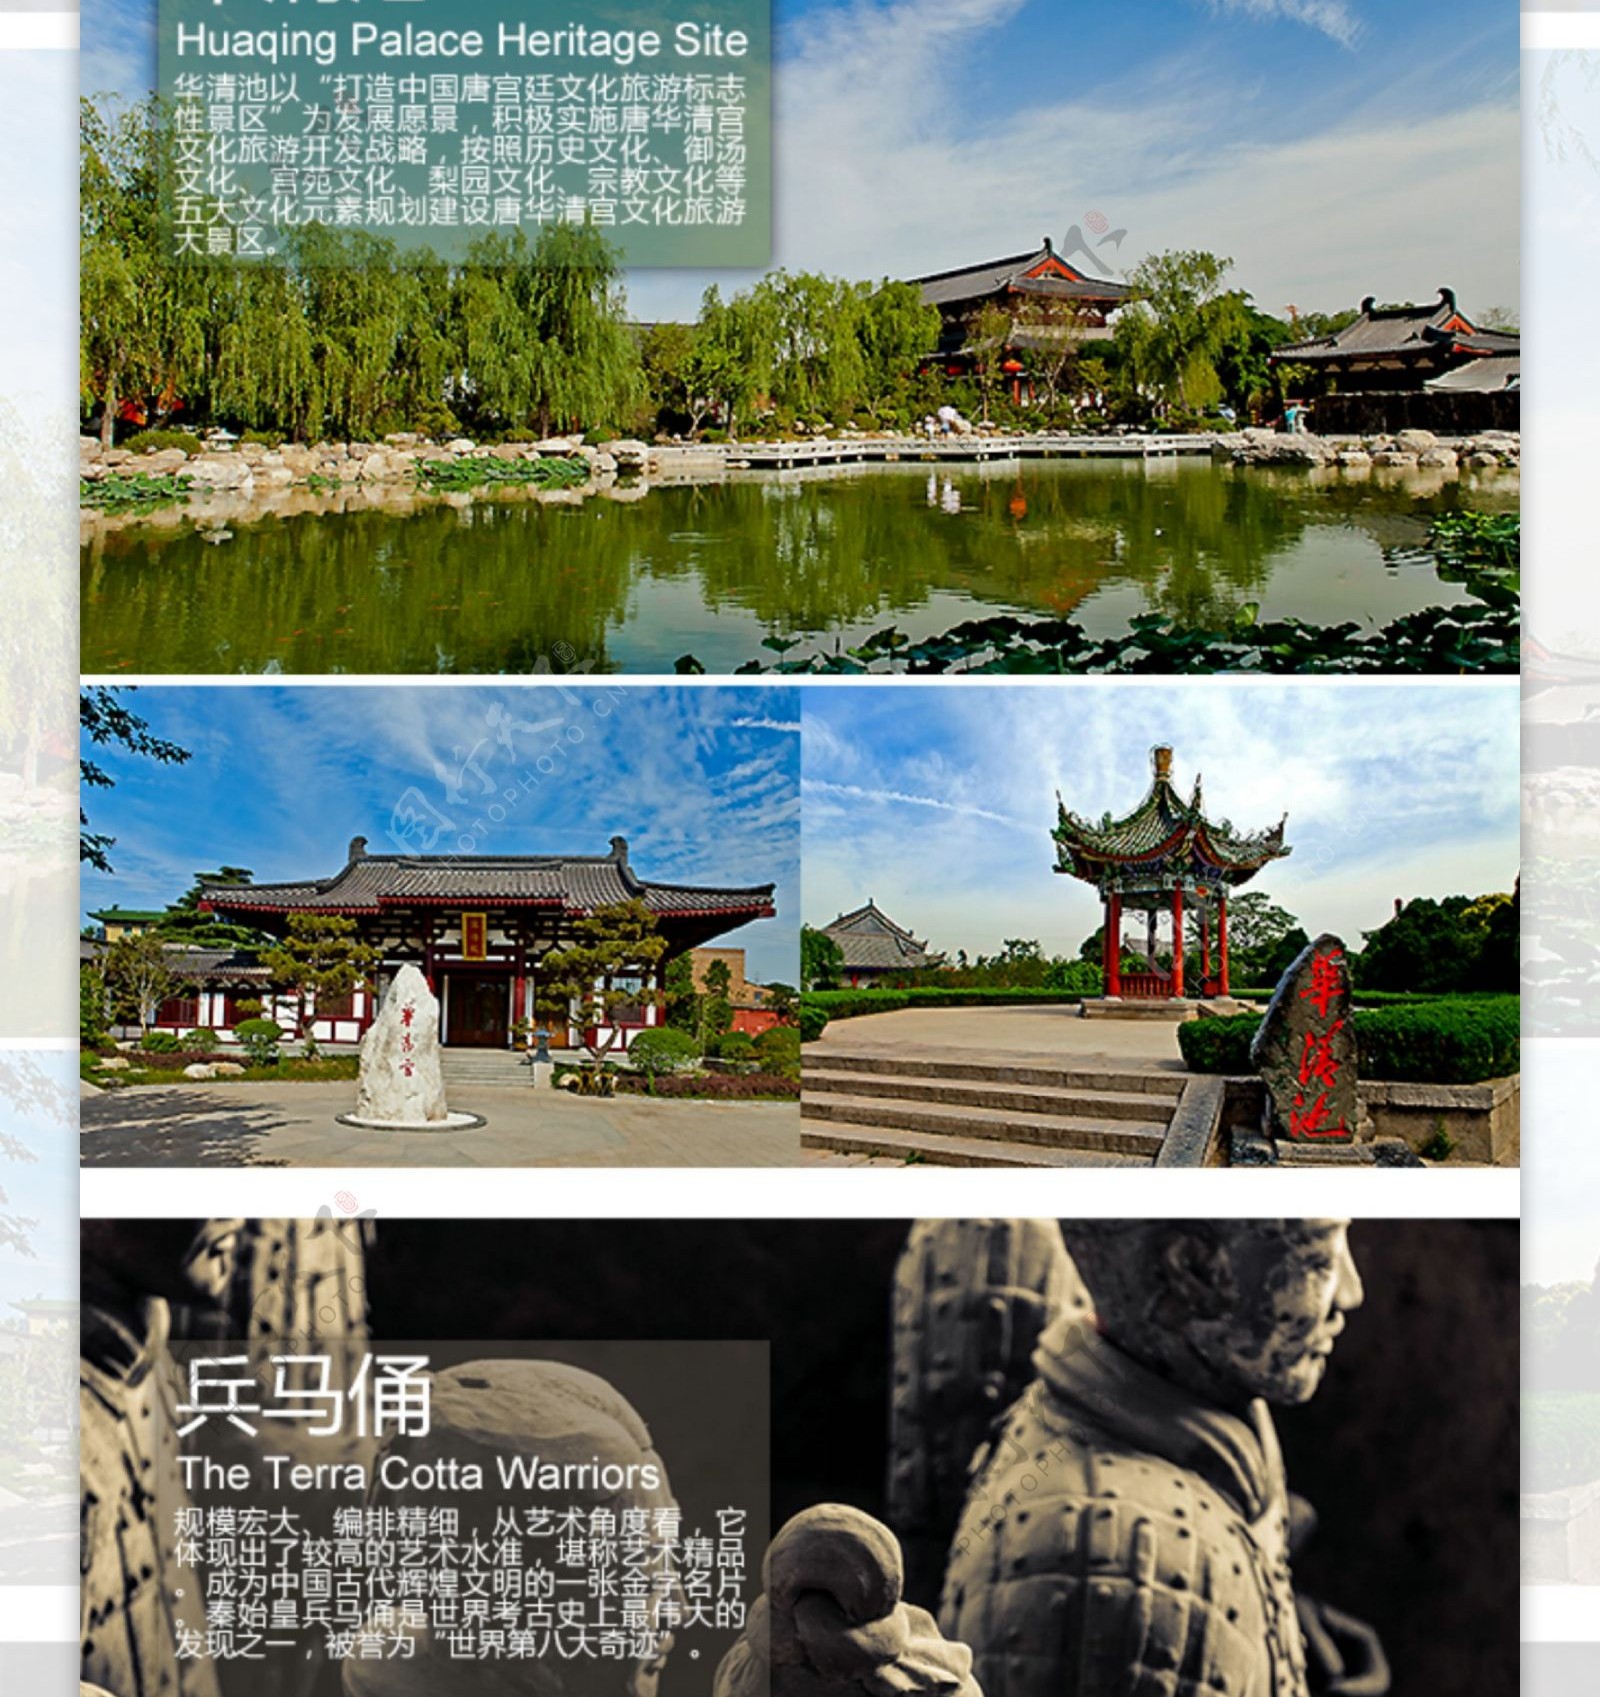 西安旅游景点介绍照片排版设计